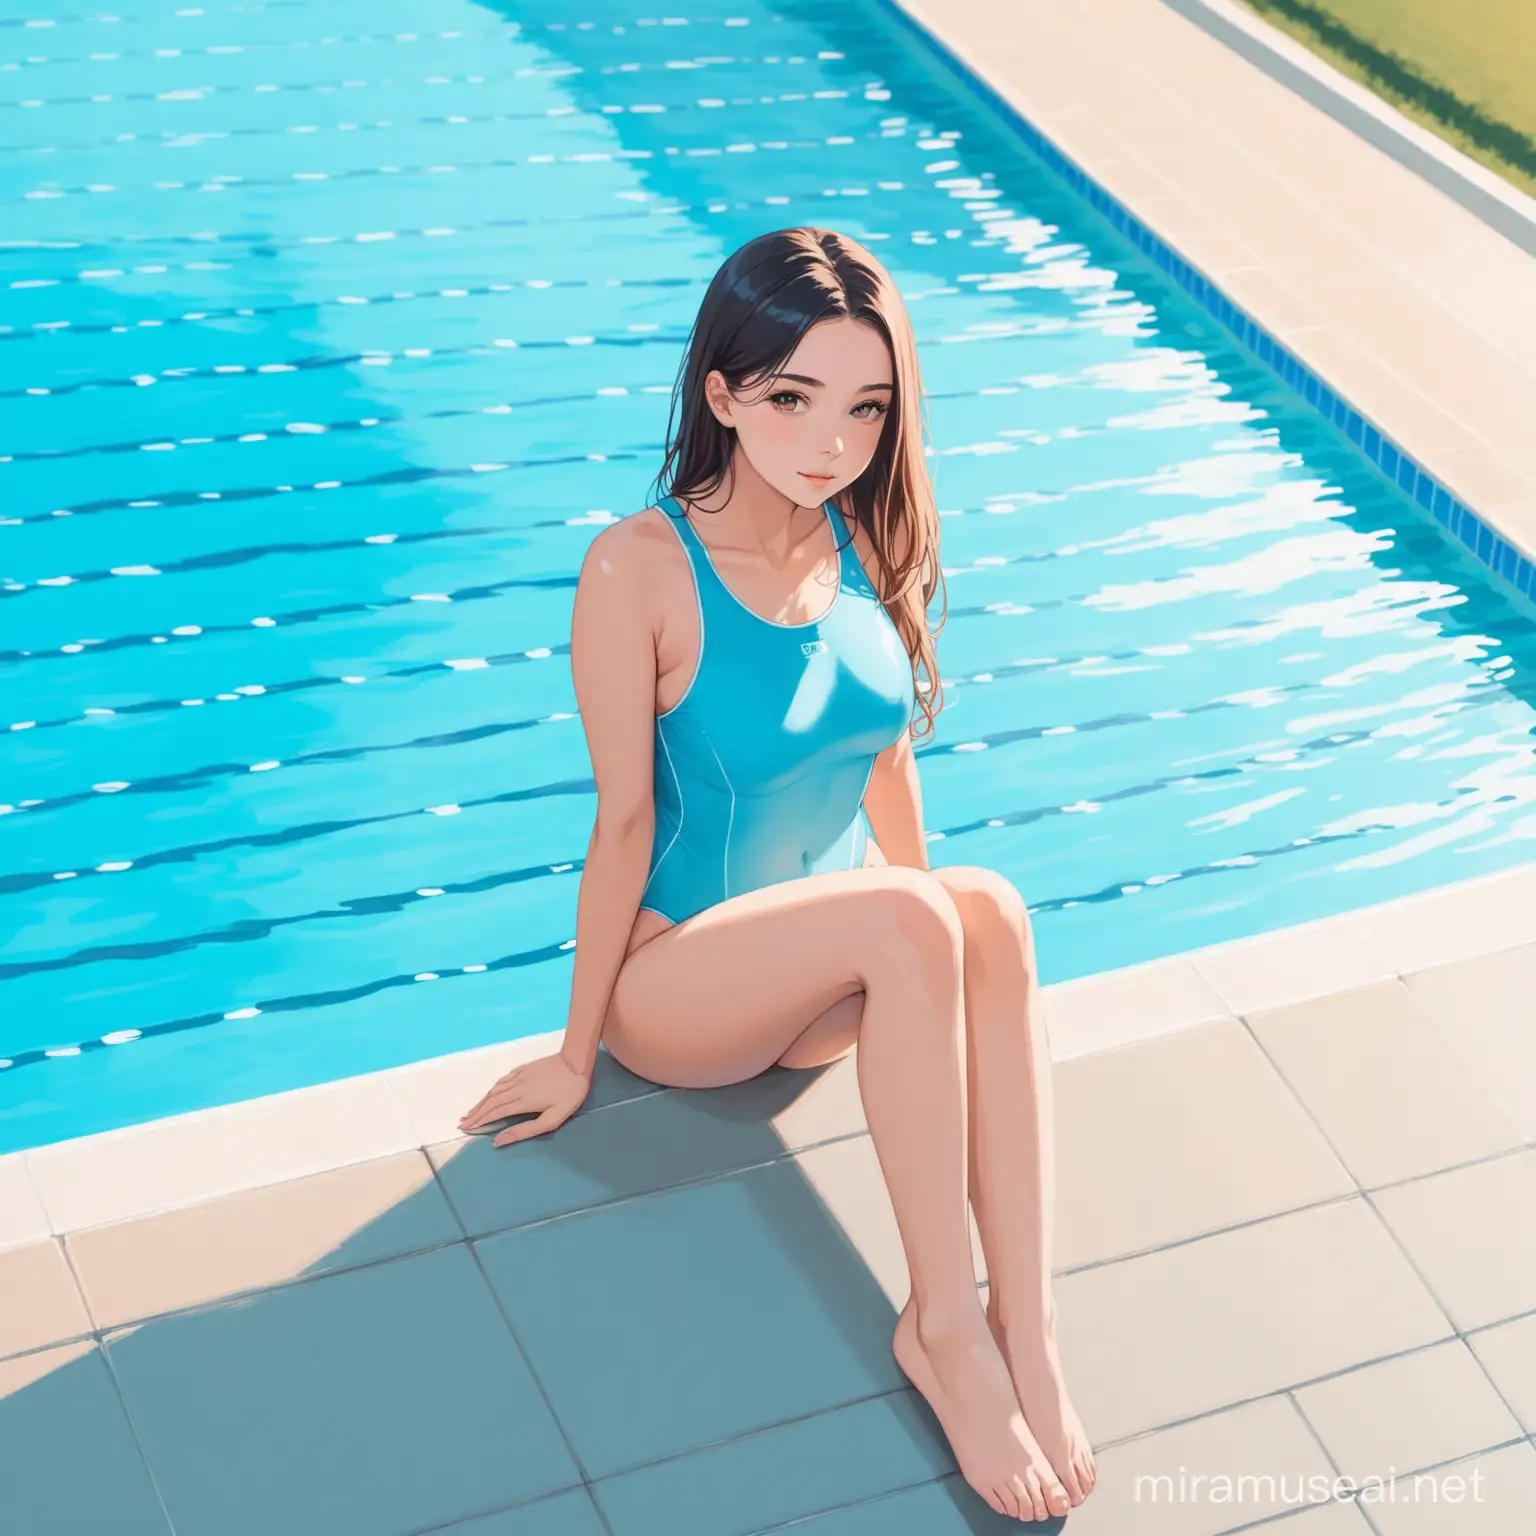 Graceful Woman in Light Blue Swimsuit Relaxing Poolside